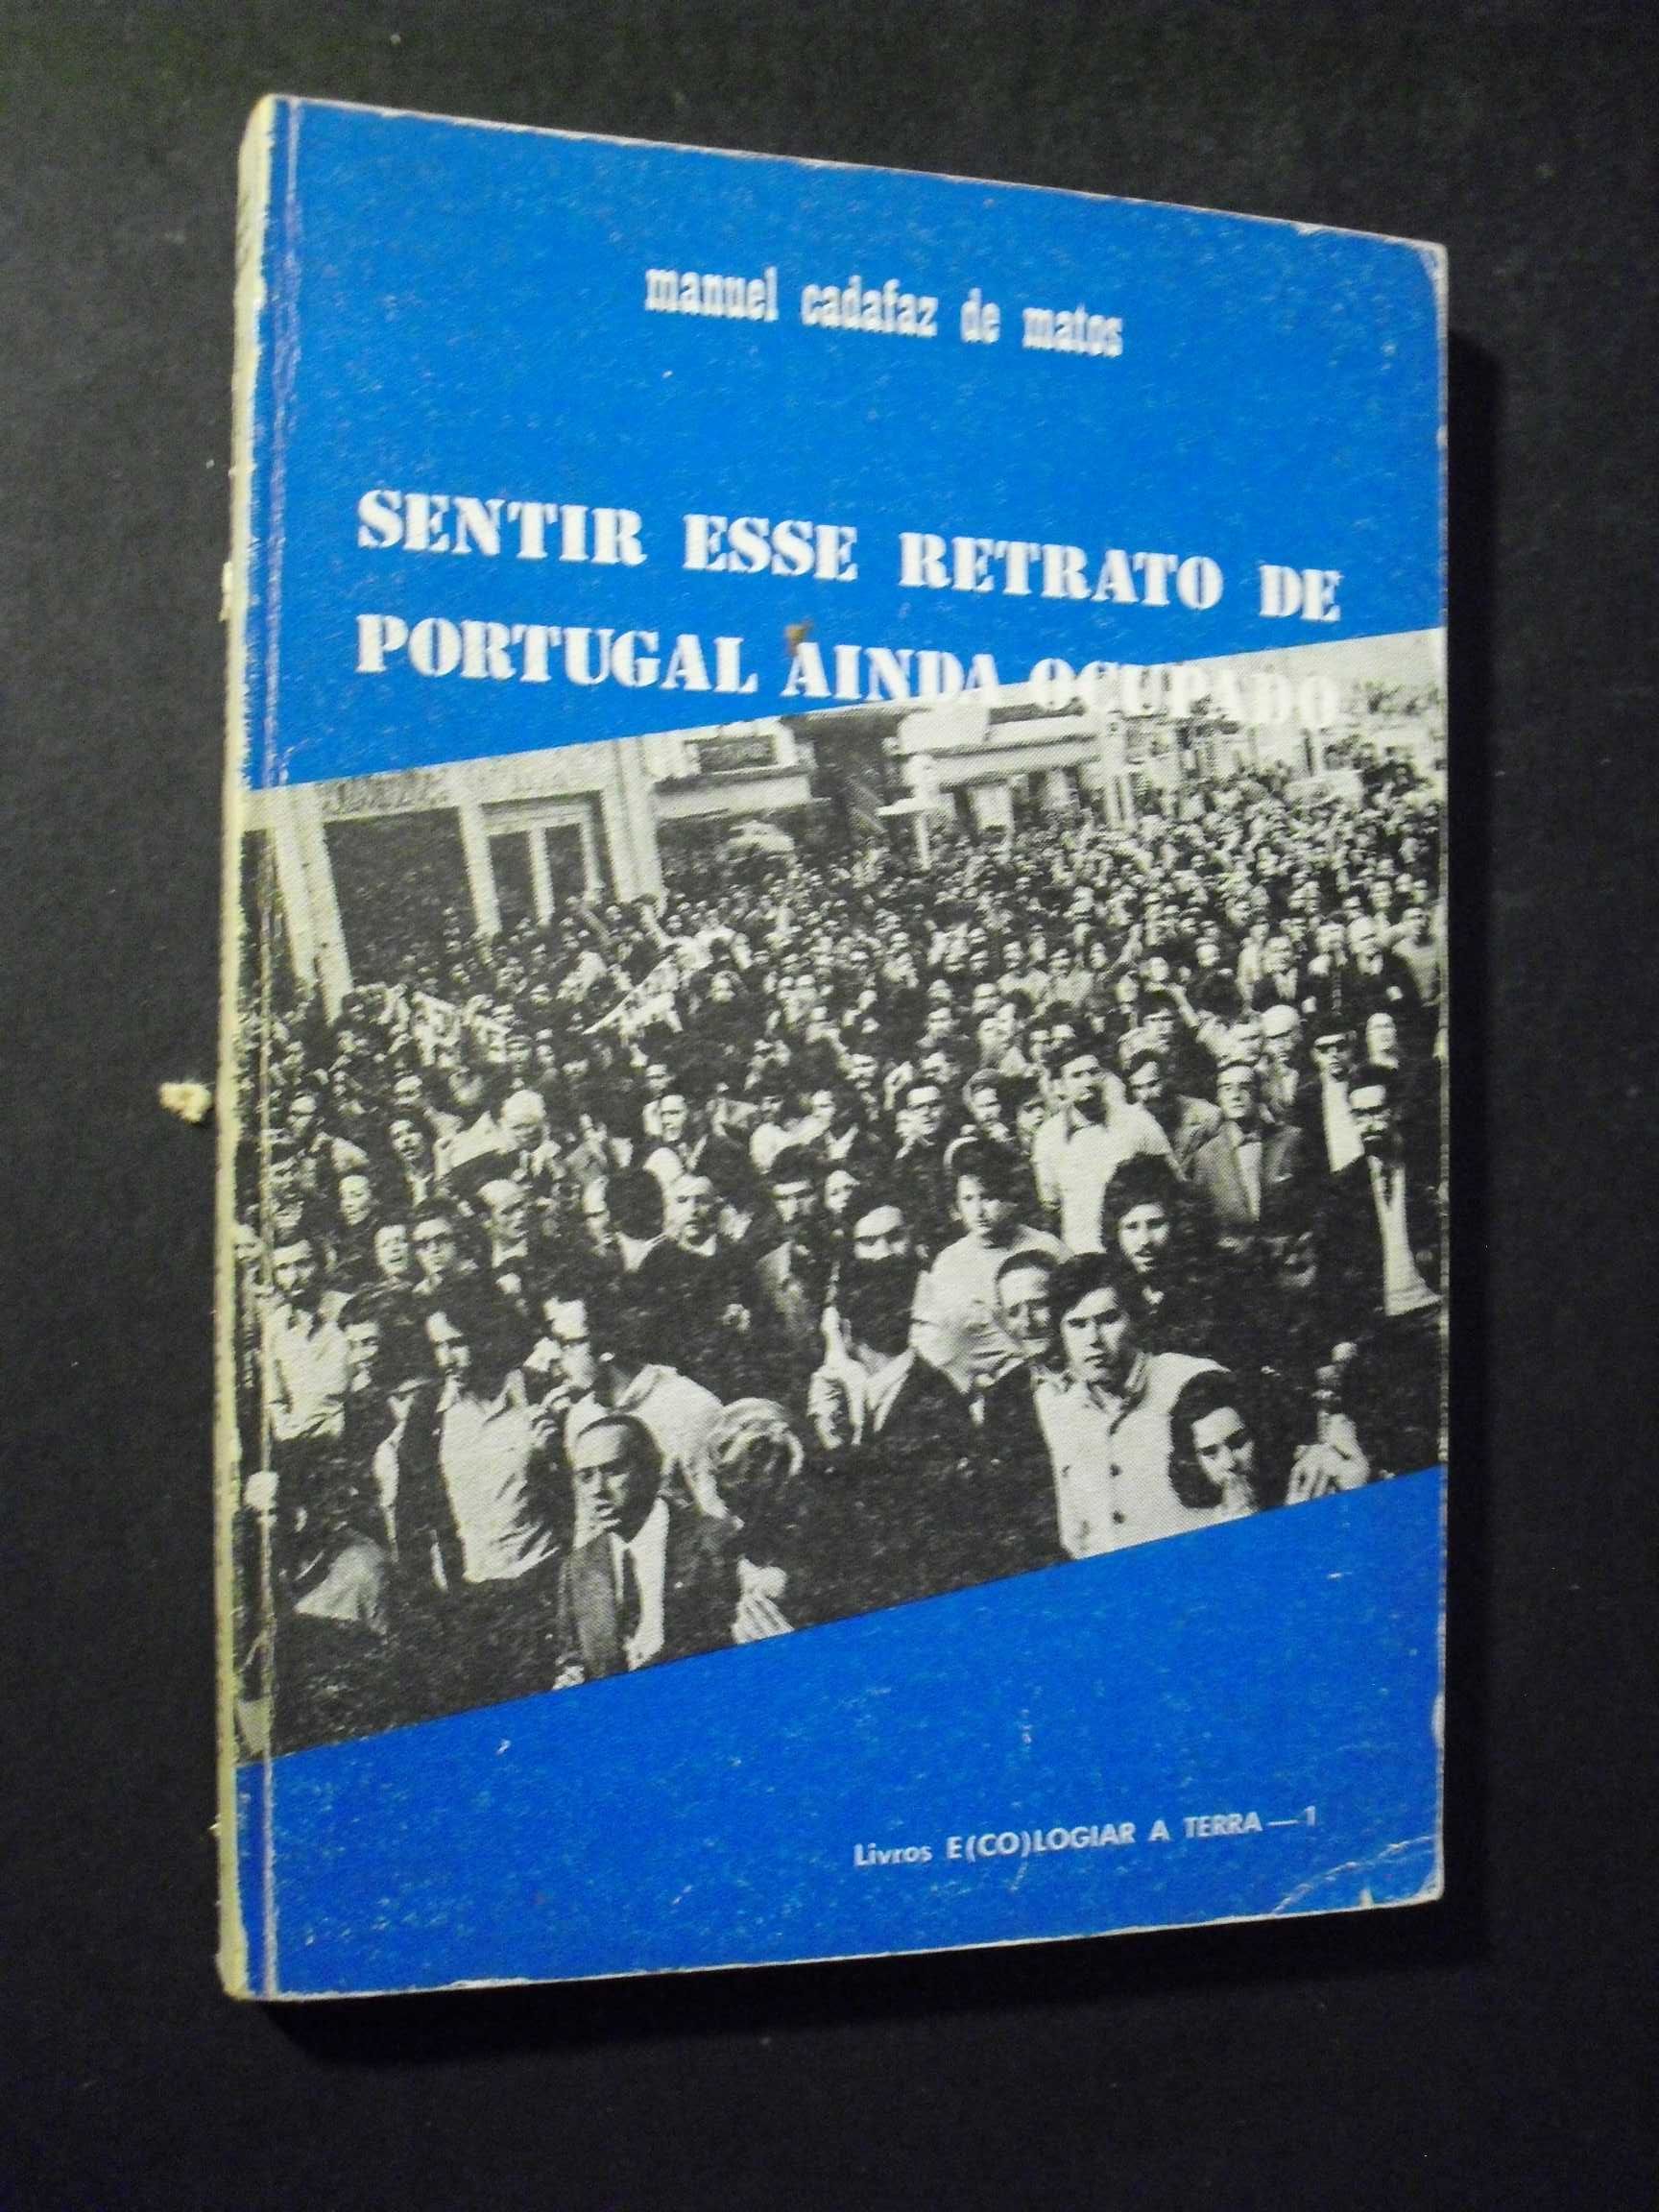 Matos (Manuel Cadafaz de);Sentir esse Retrato  Portugal ainda Ocupado